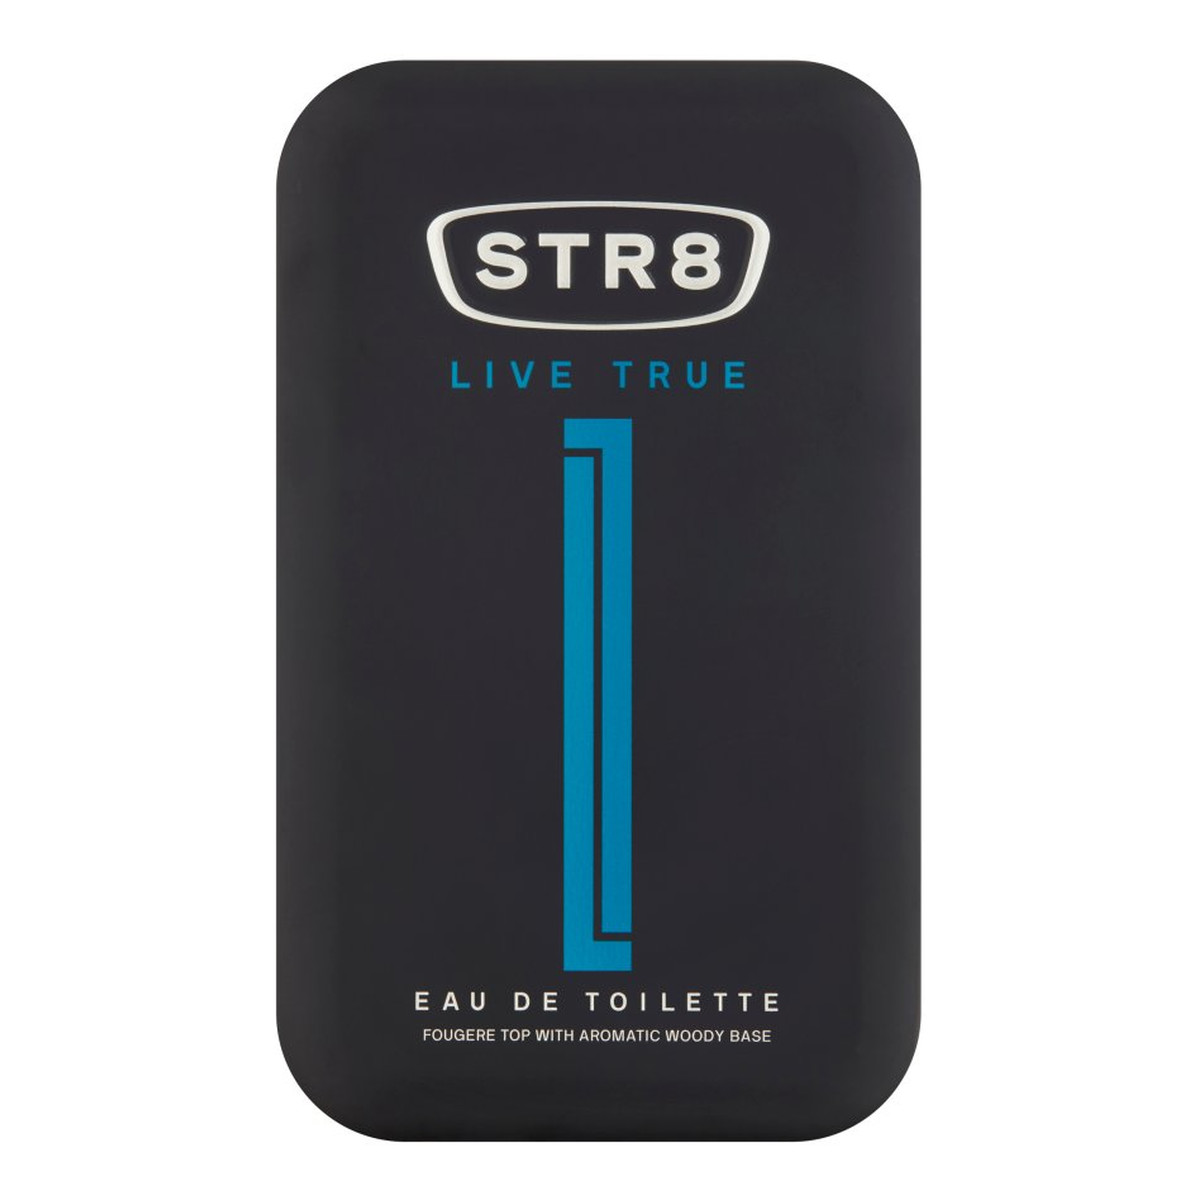 STR8 Live True Woda Toaletowa 50ml